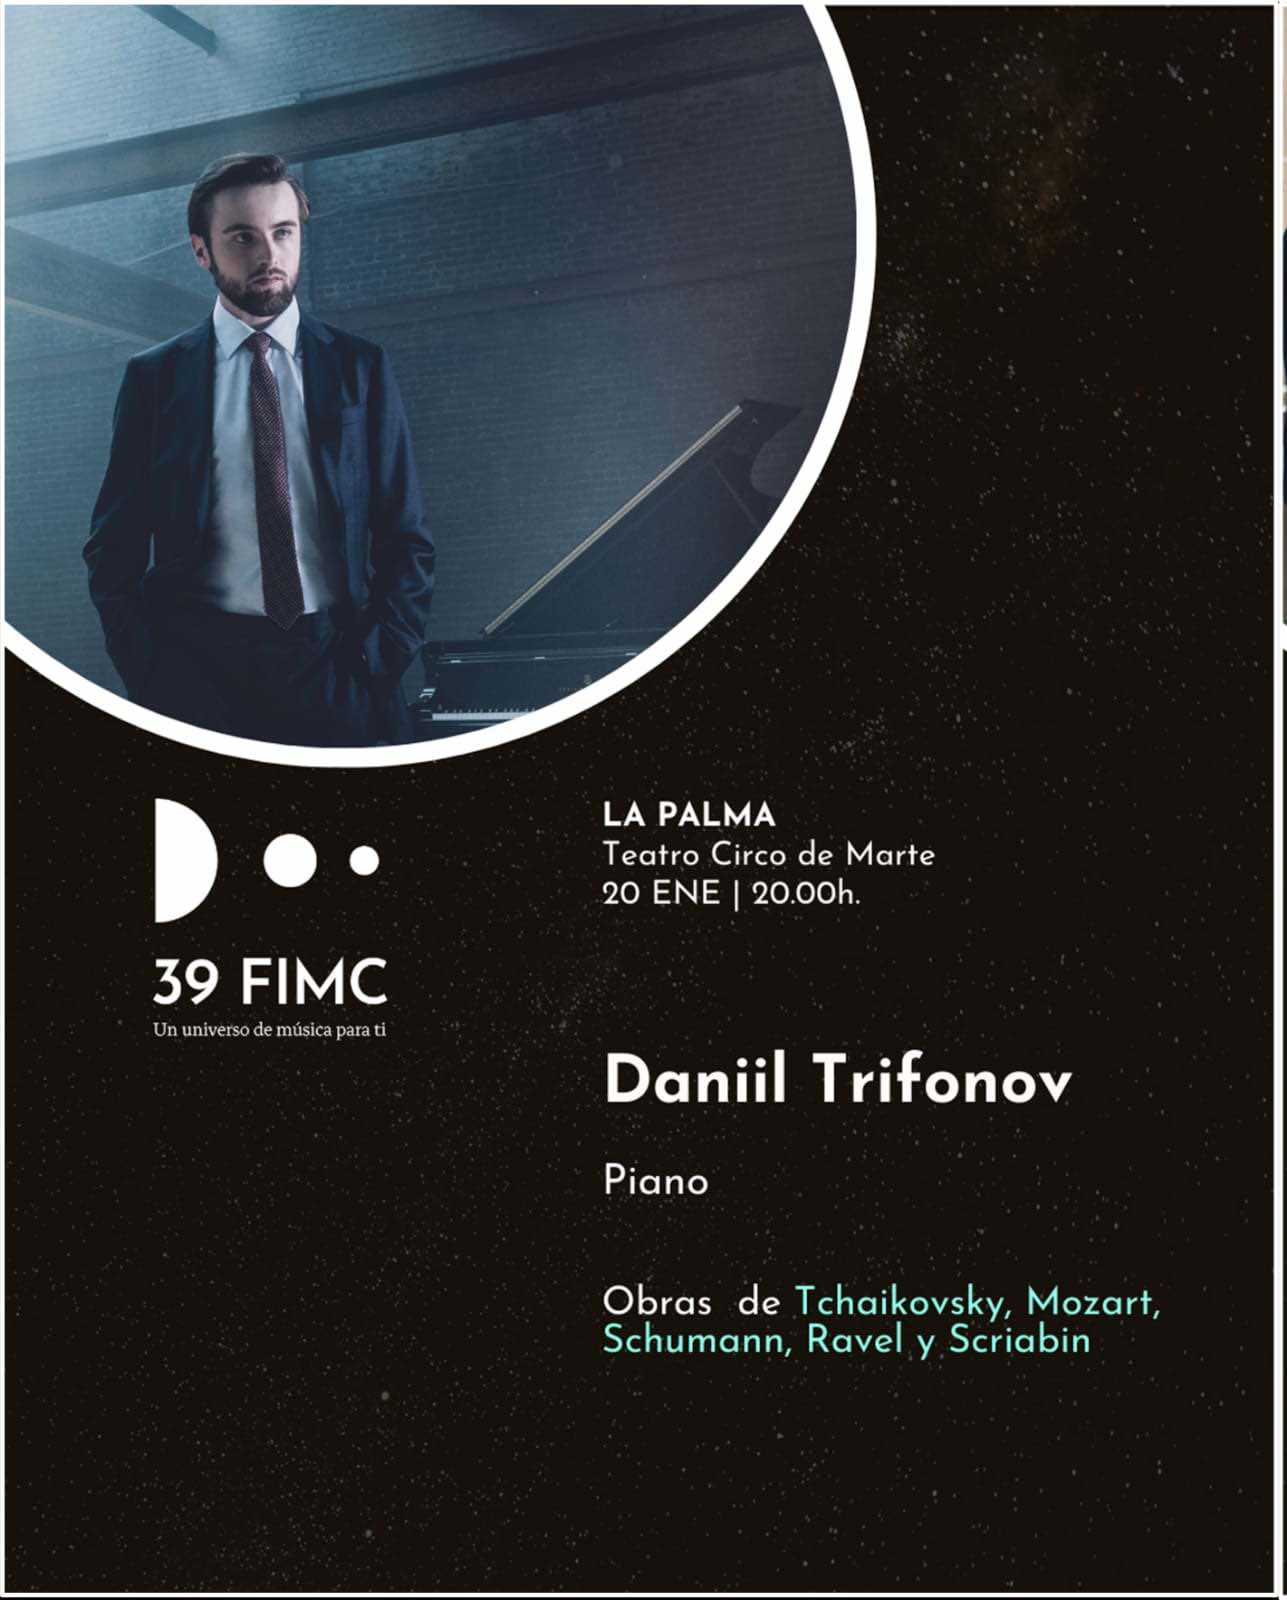 El Teatro Circo de Marte acoge al galardonado pianista Daniil Trifonov